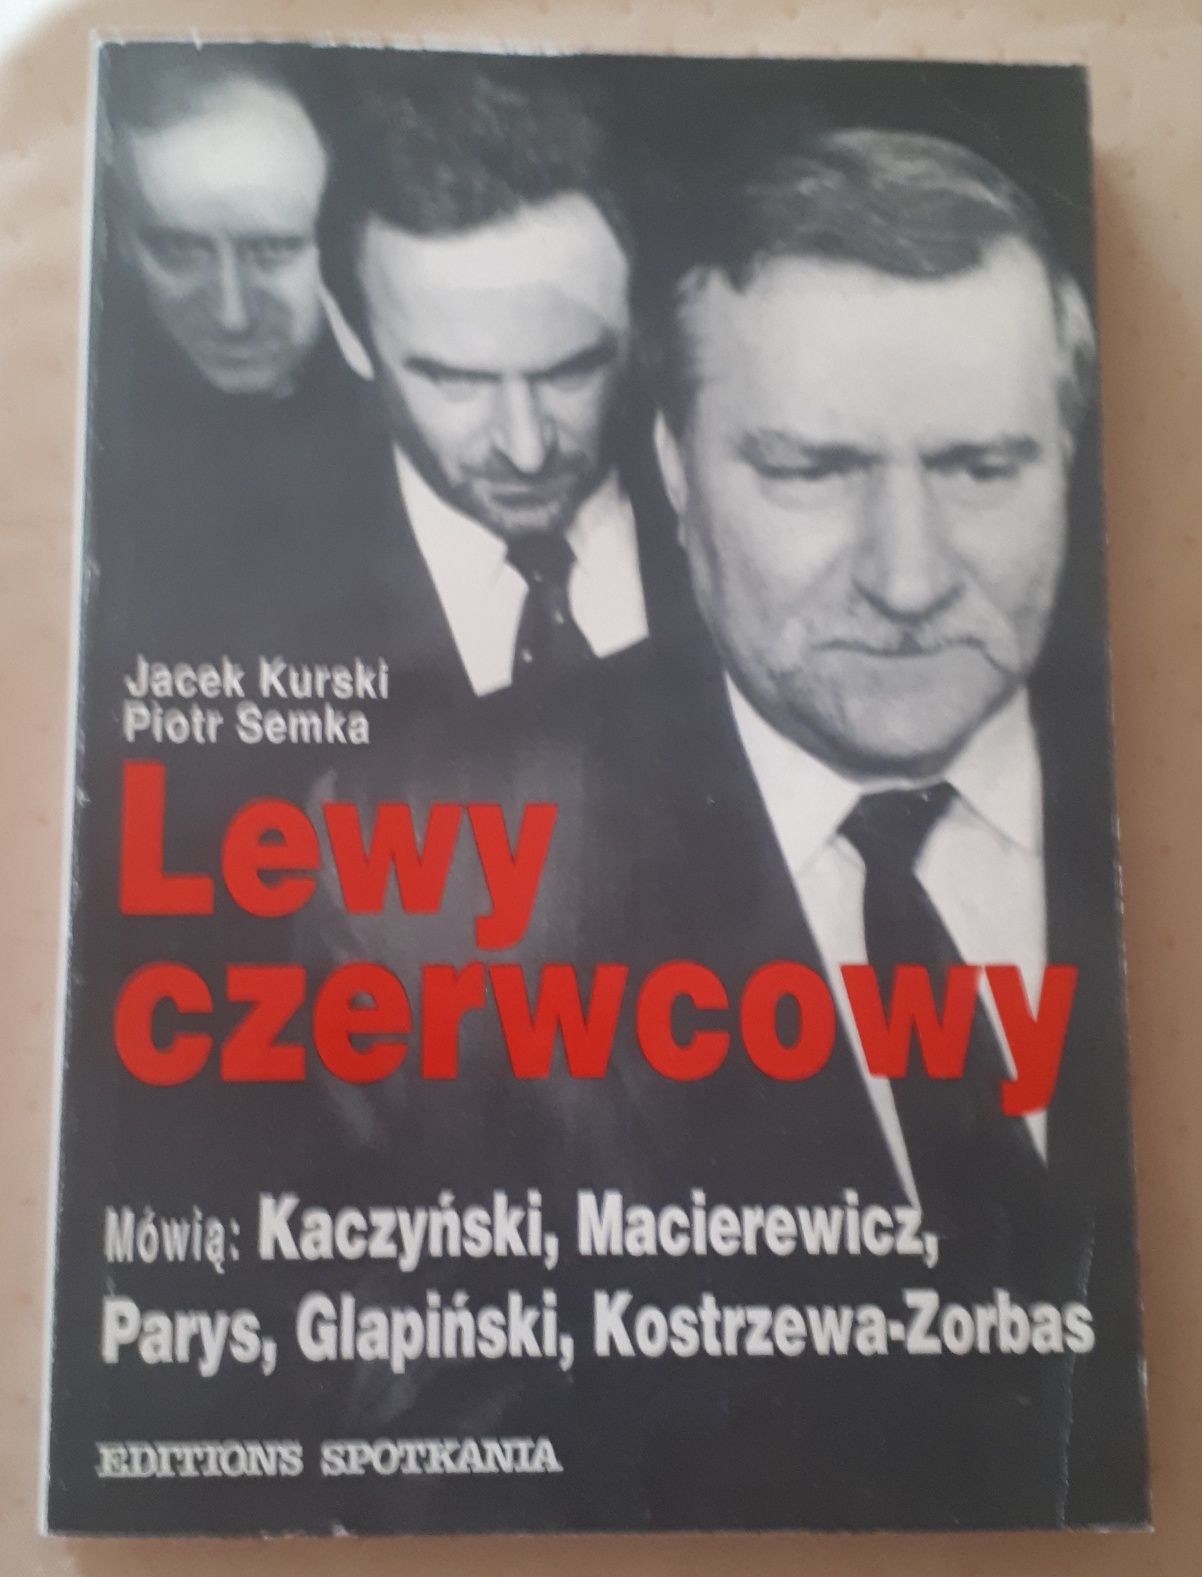 LEWY CZERWCOWY Jacek Kurski, Piotr Semka  1992